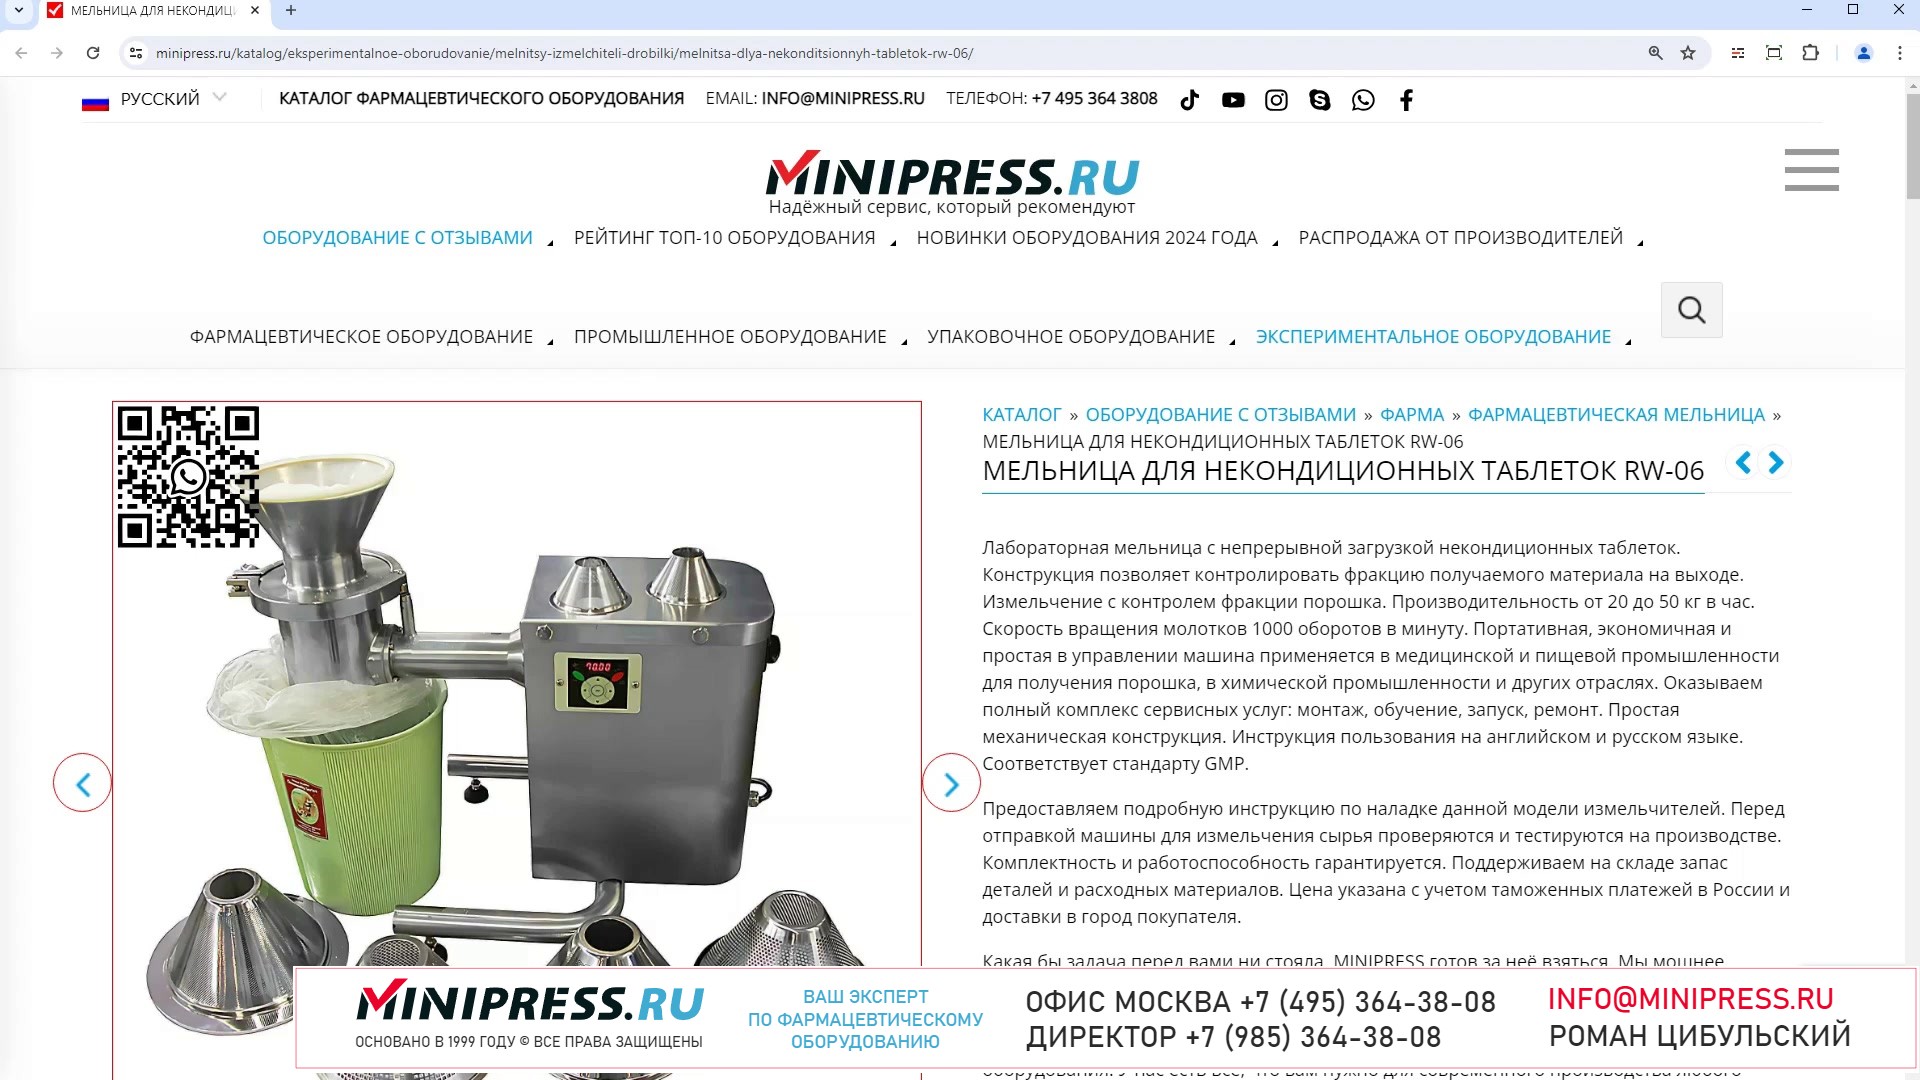 Minipress.ru Мельница для некондиционных таблеток RW-06